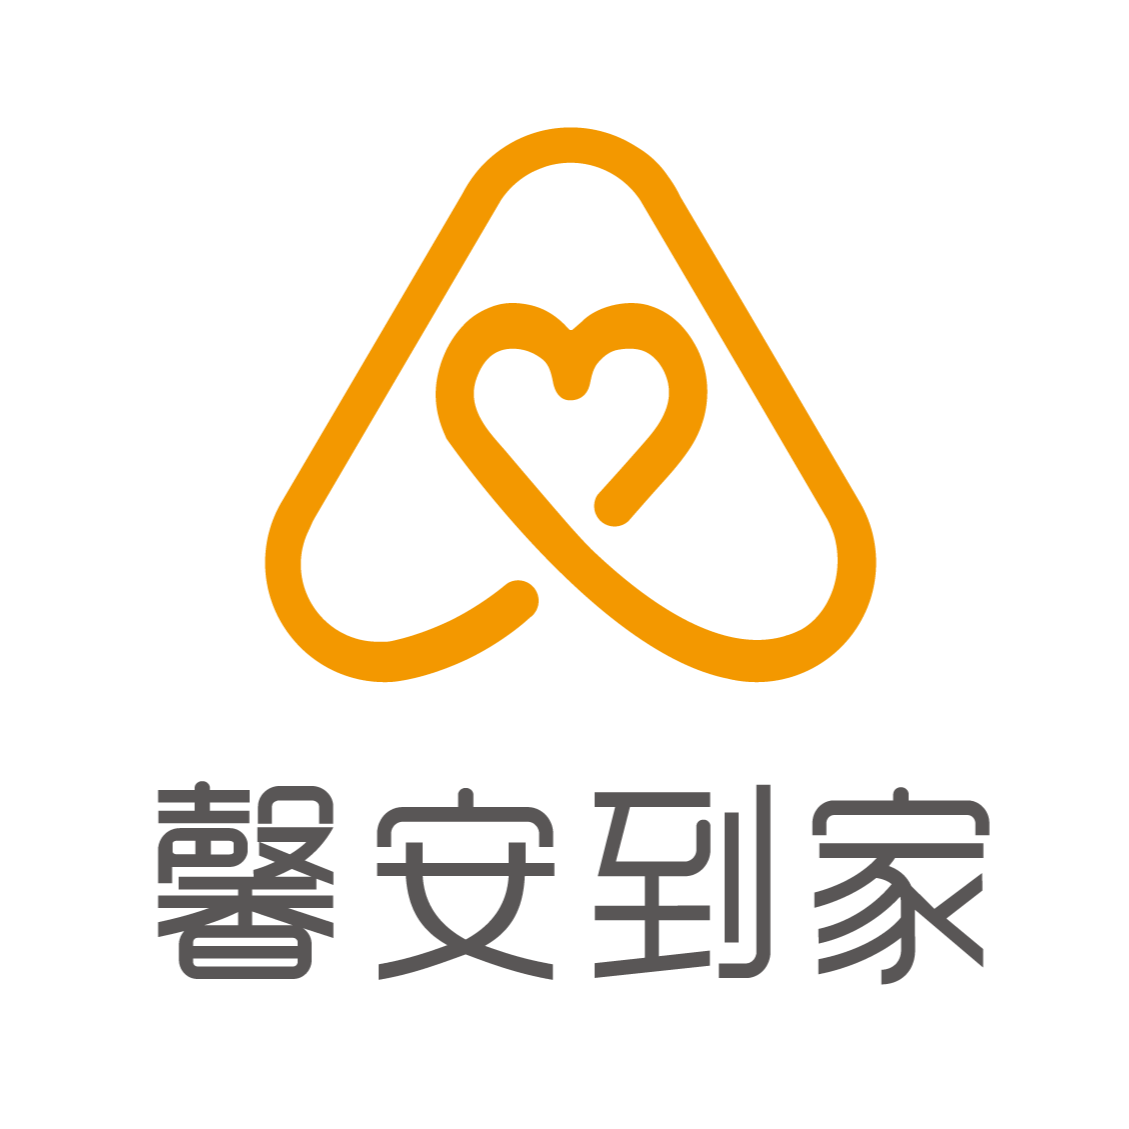 深圳市馨安到家服务有限公司logo